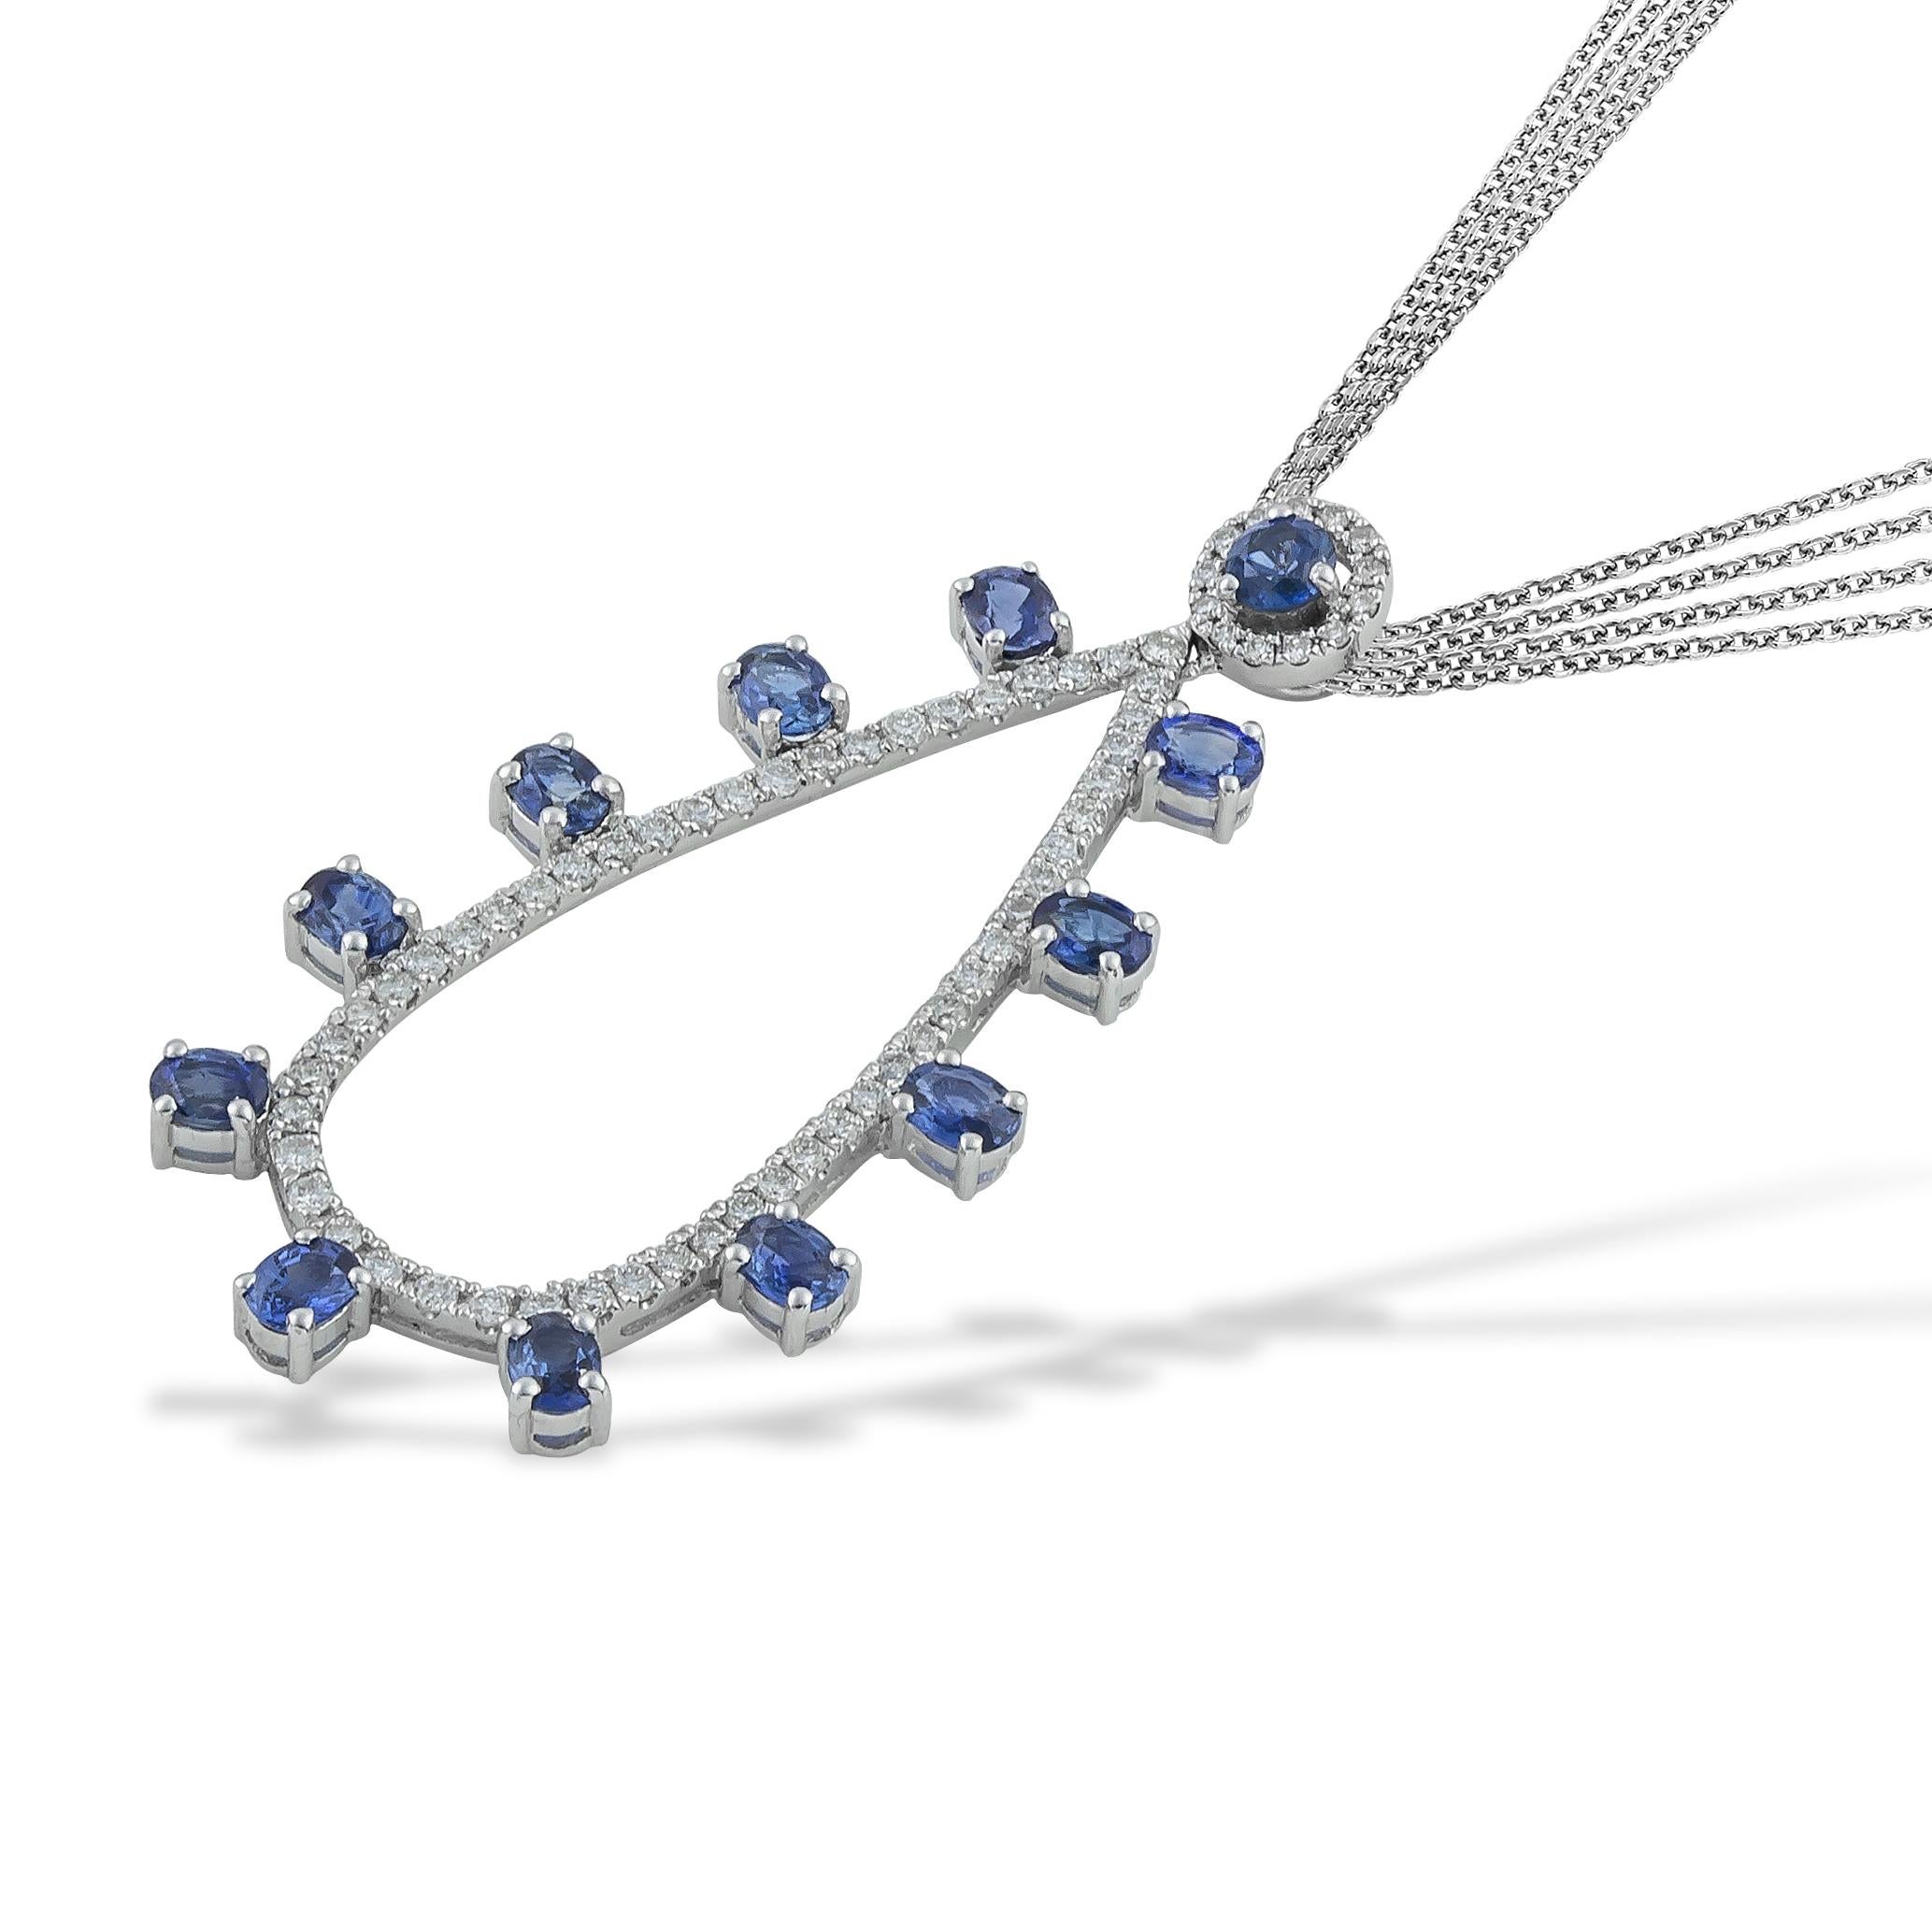 Ovale blaue Saphire mit 2,90 Karat in einem spektakulären Tropfen - Anhänger in Birnenform - Halskette mit 0,81 Karat Diamanten im Brillantschliff in 18kt Weißgold. Originell, elegant und mit einer fließenden Form, die zu jedem Look passt. Dieser